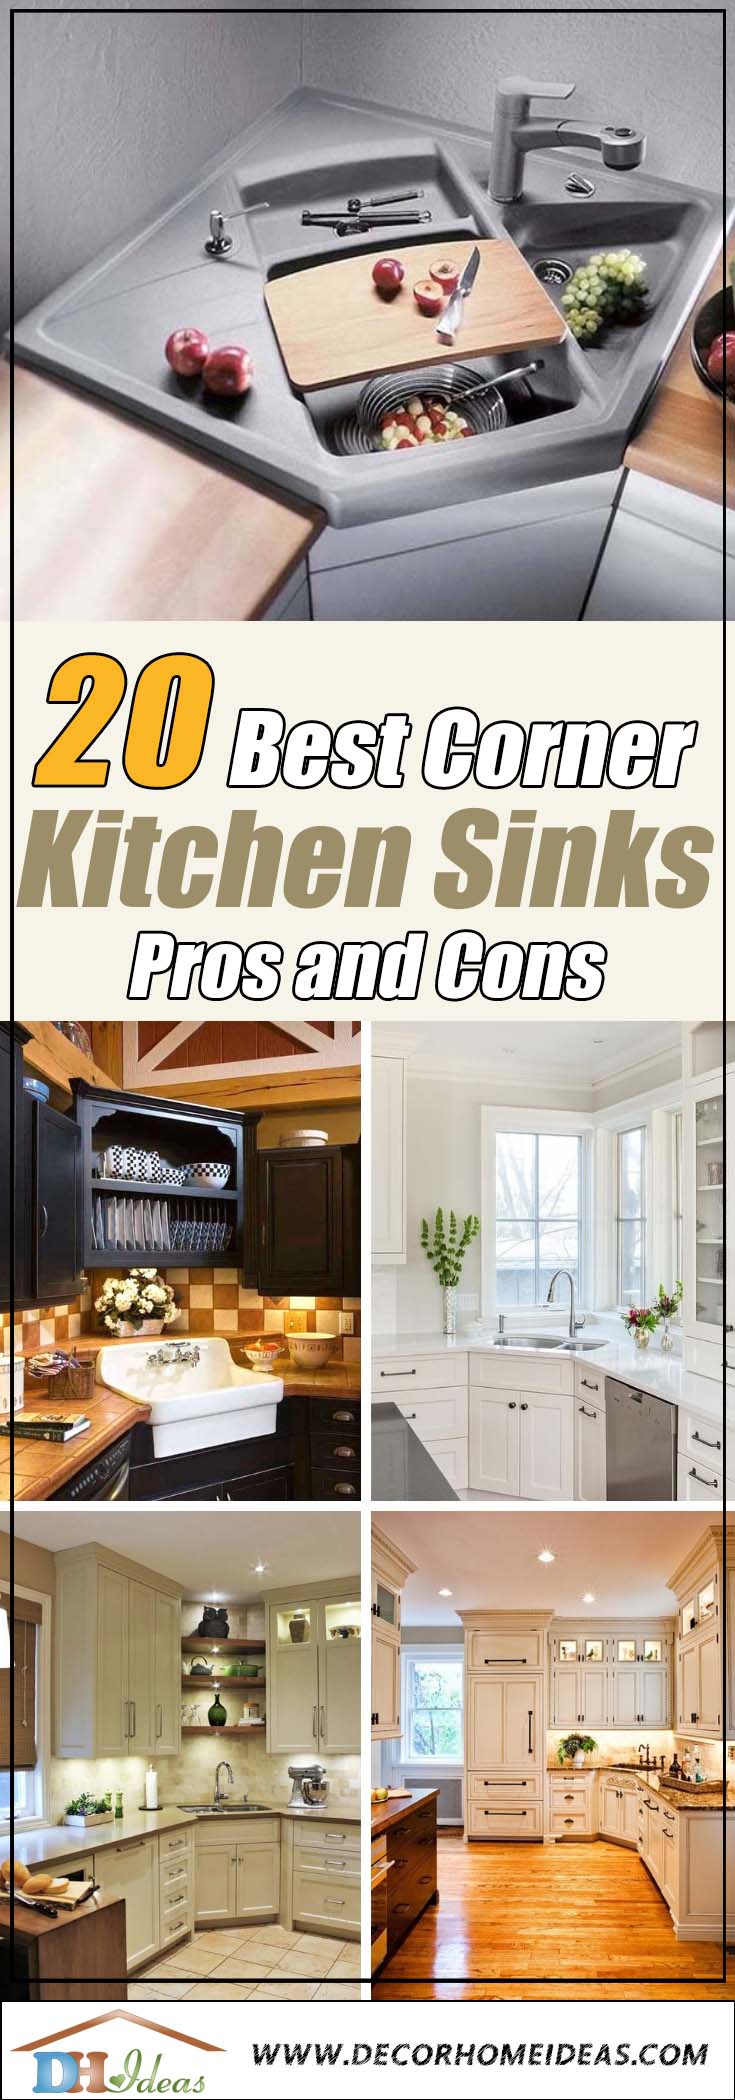 Best Corner Kitchen Sinks #cornersink #kitchen #sink #decorhomeideas